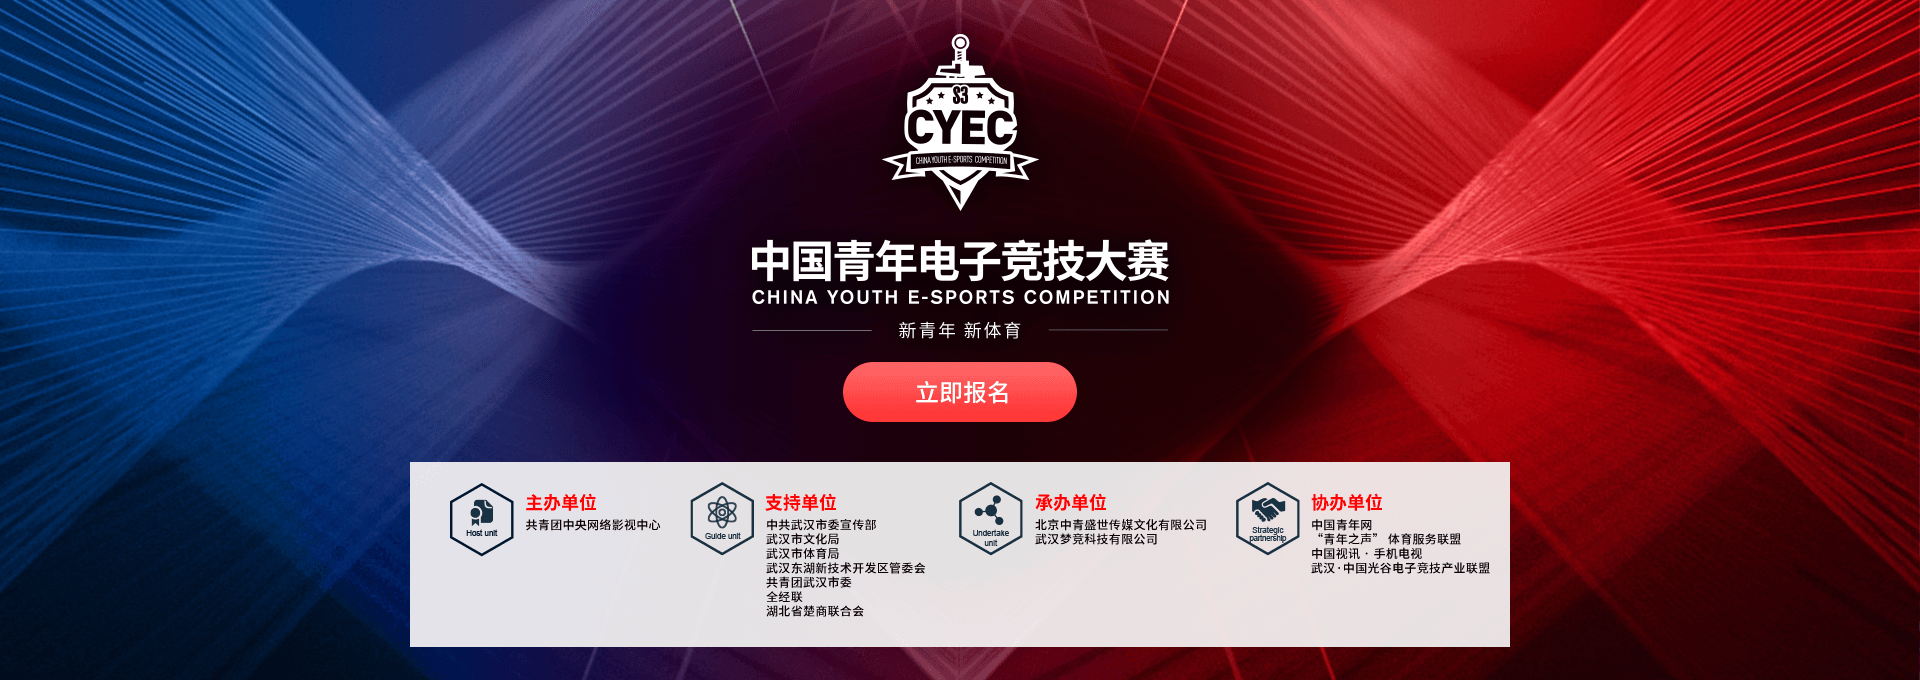 中国青年电子竞技大赛报名